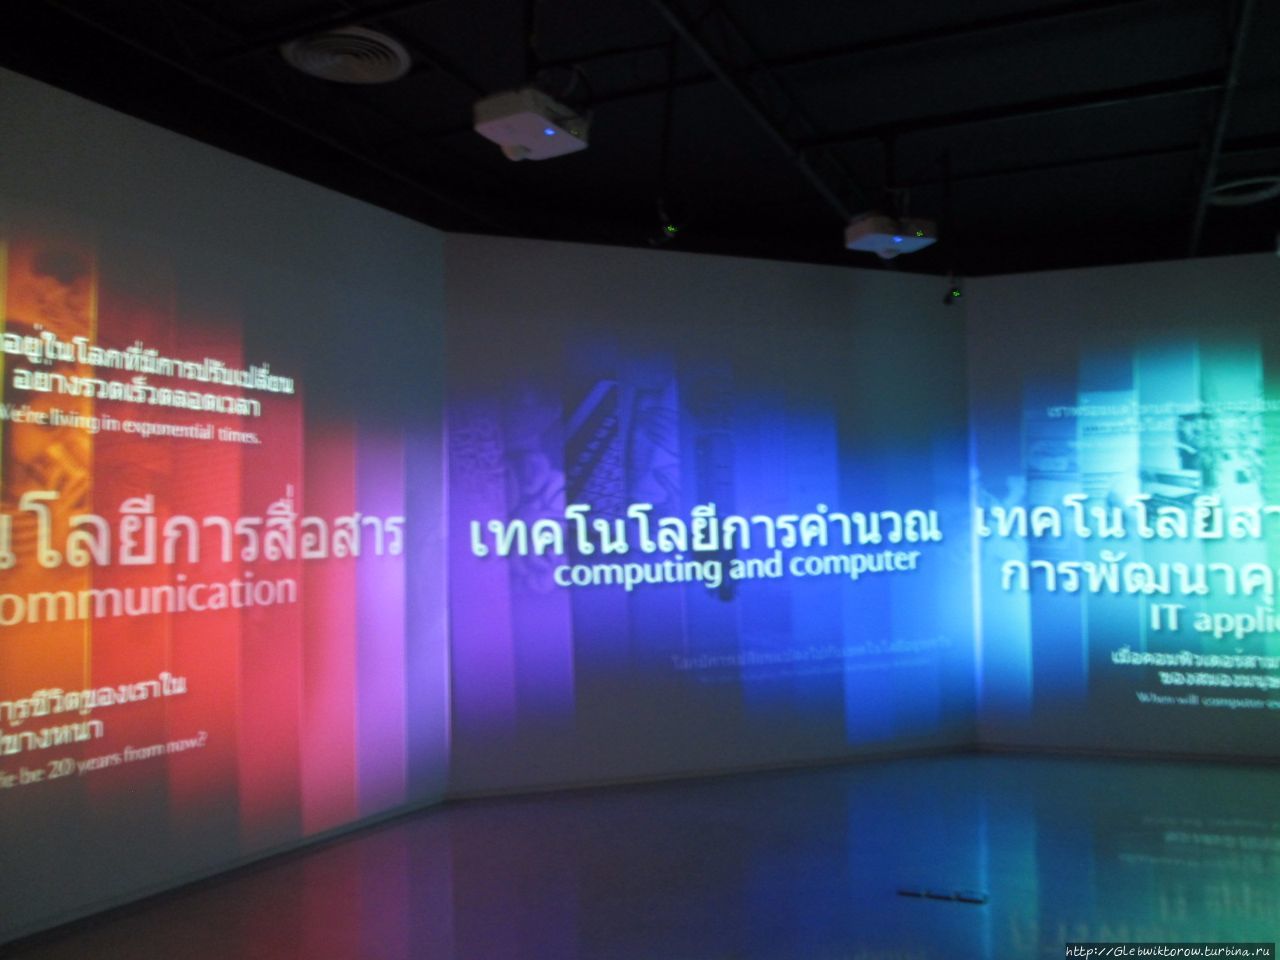 Музей связи Патум-Тани, Таиланд